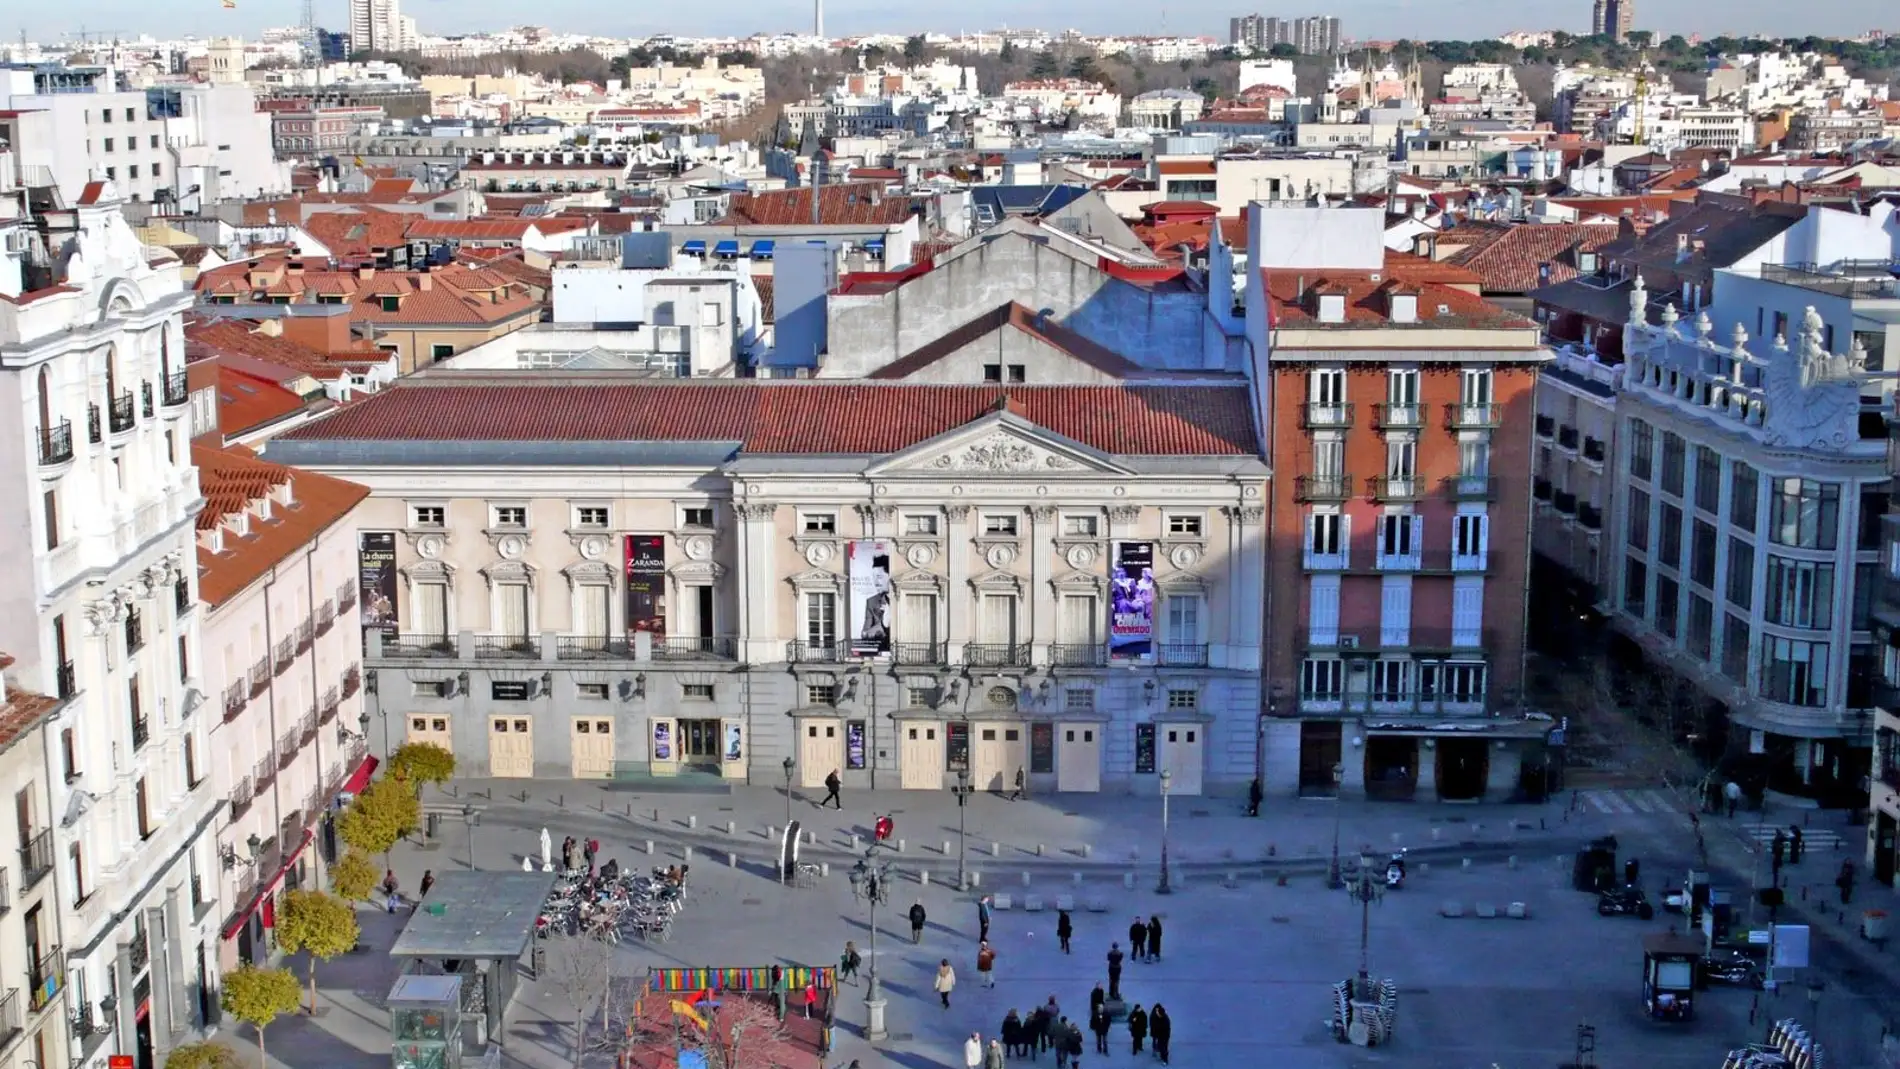 Teatro Español, Plaza de Santa Ana, Madrid